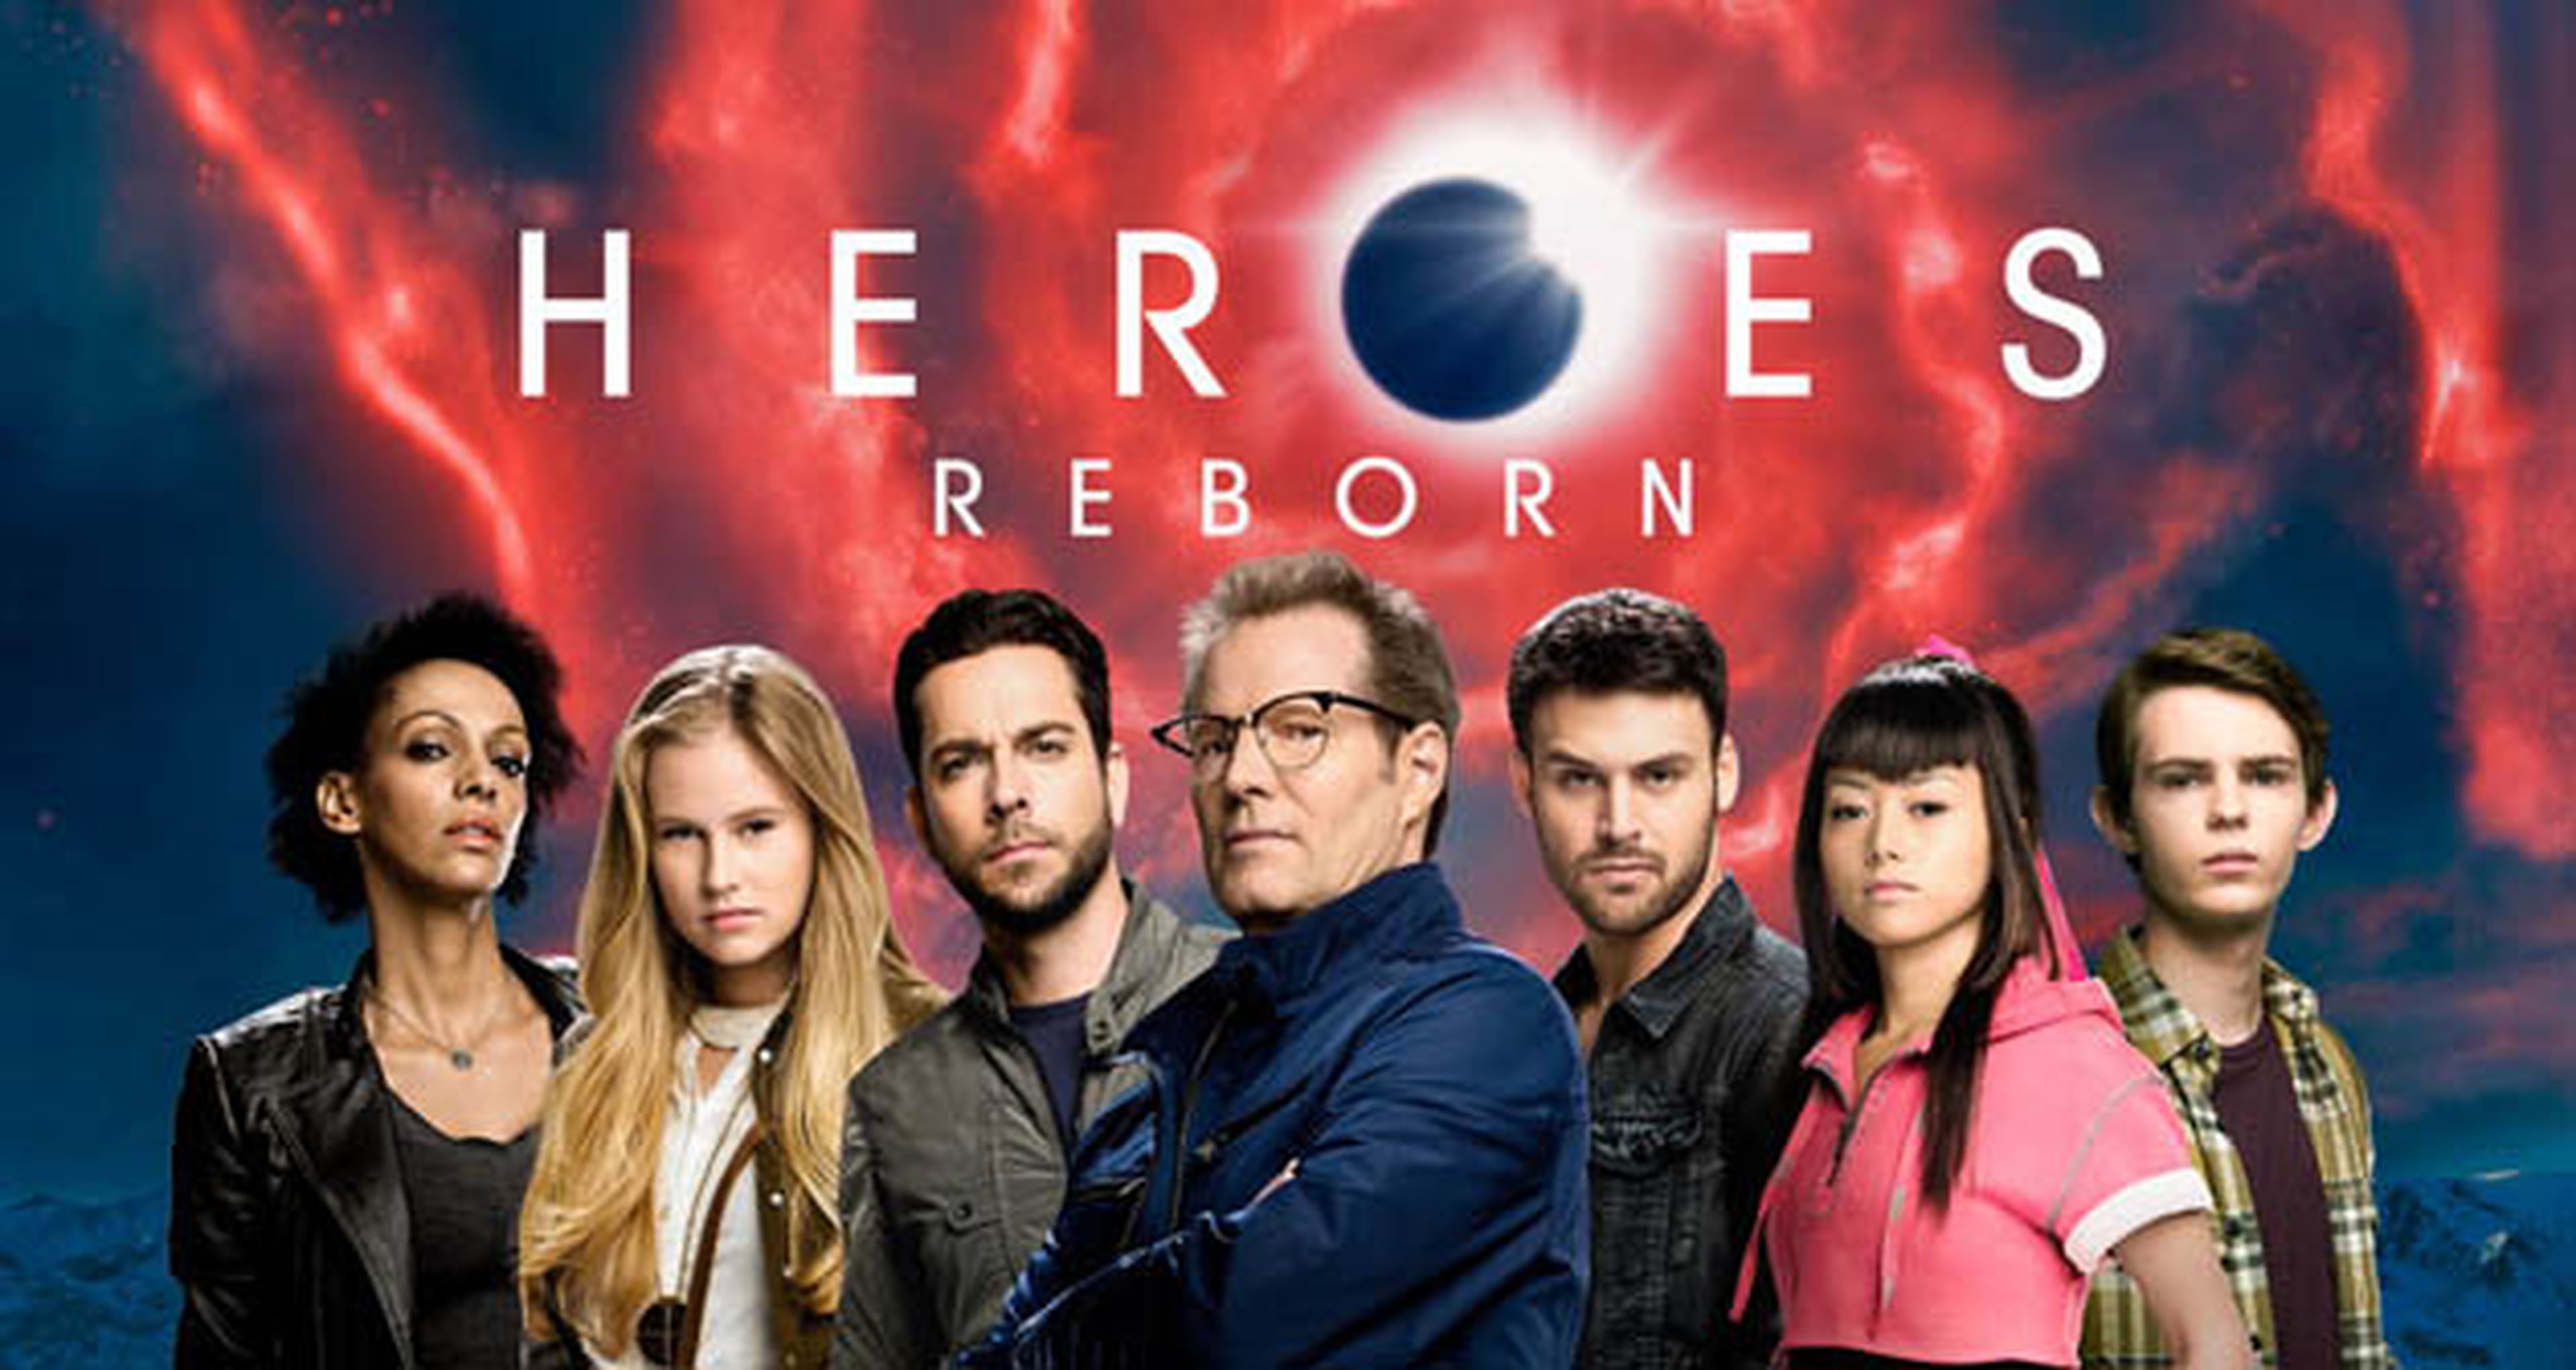 Heroes Reborn: NBC no tiene planes para continuarla